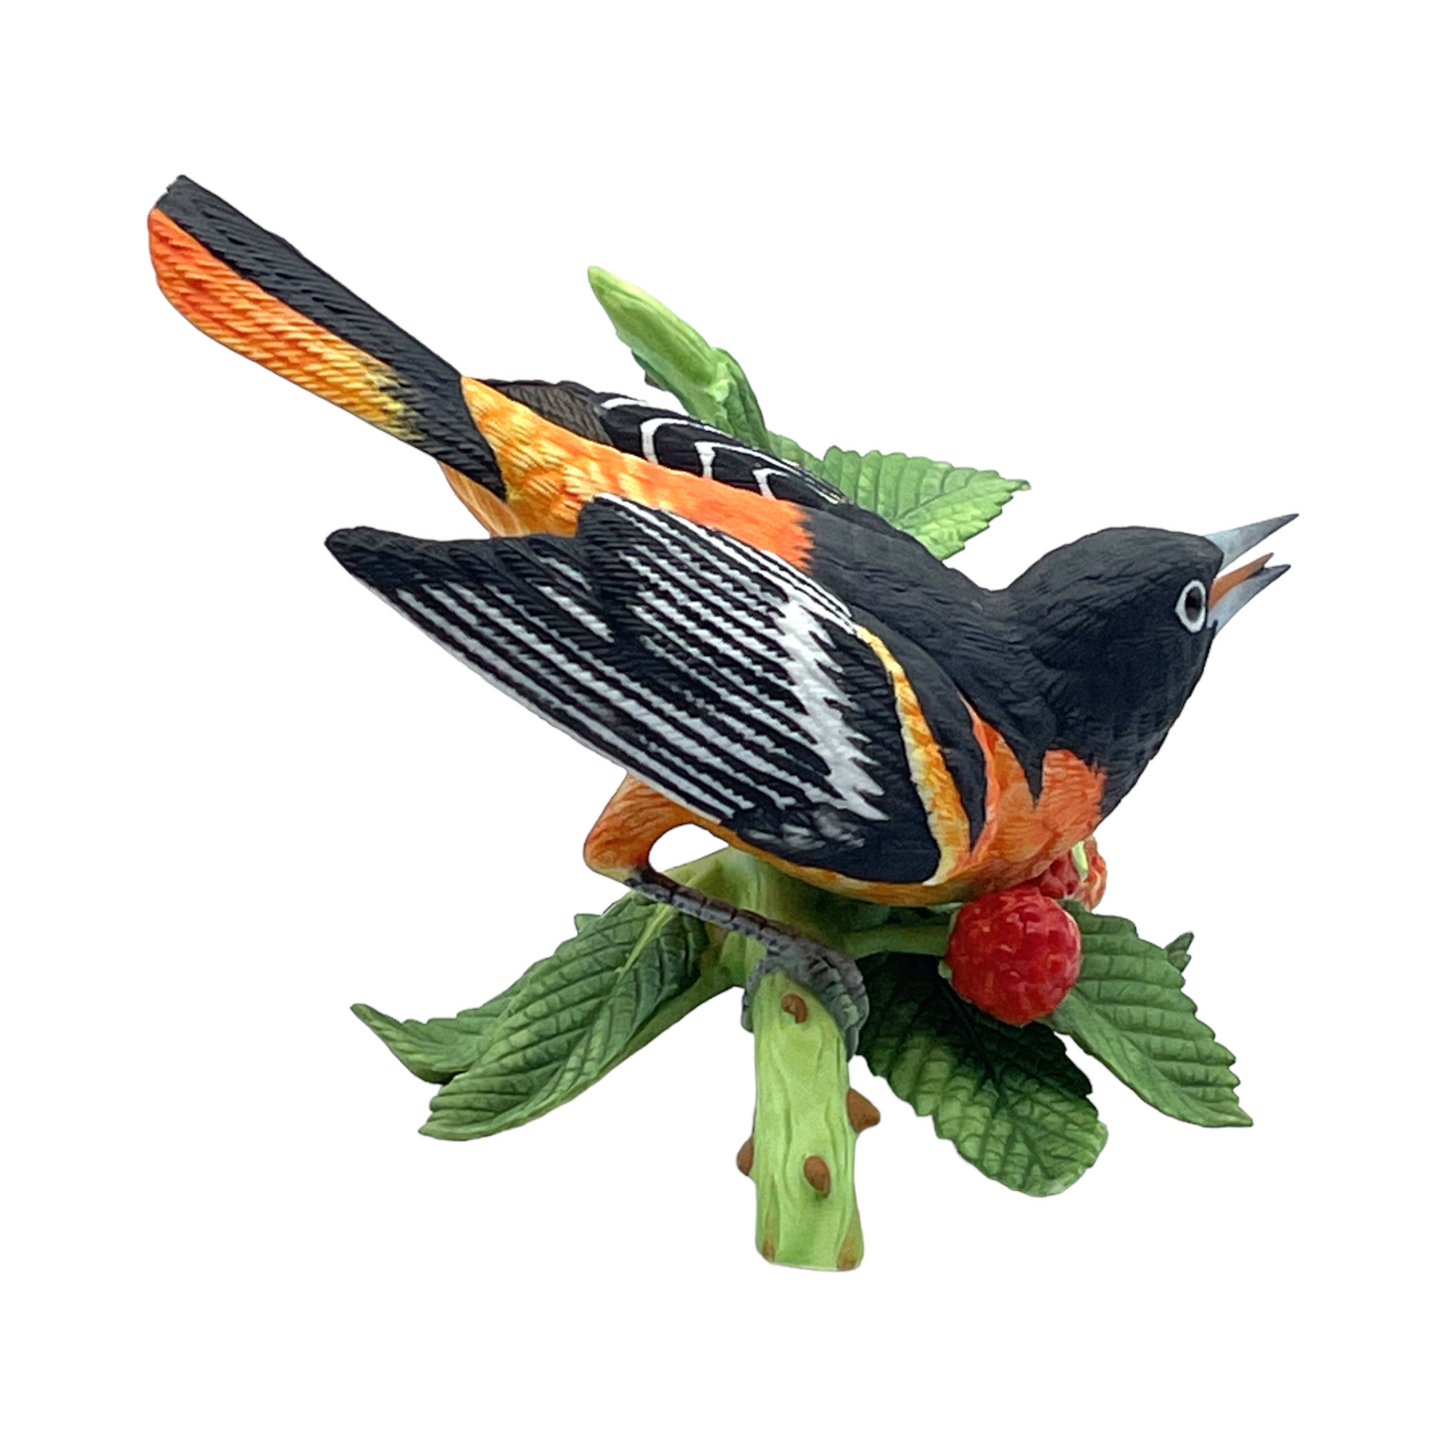 Lenox Garden Bird Collection Baltimore Oriole - With Box